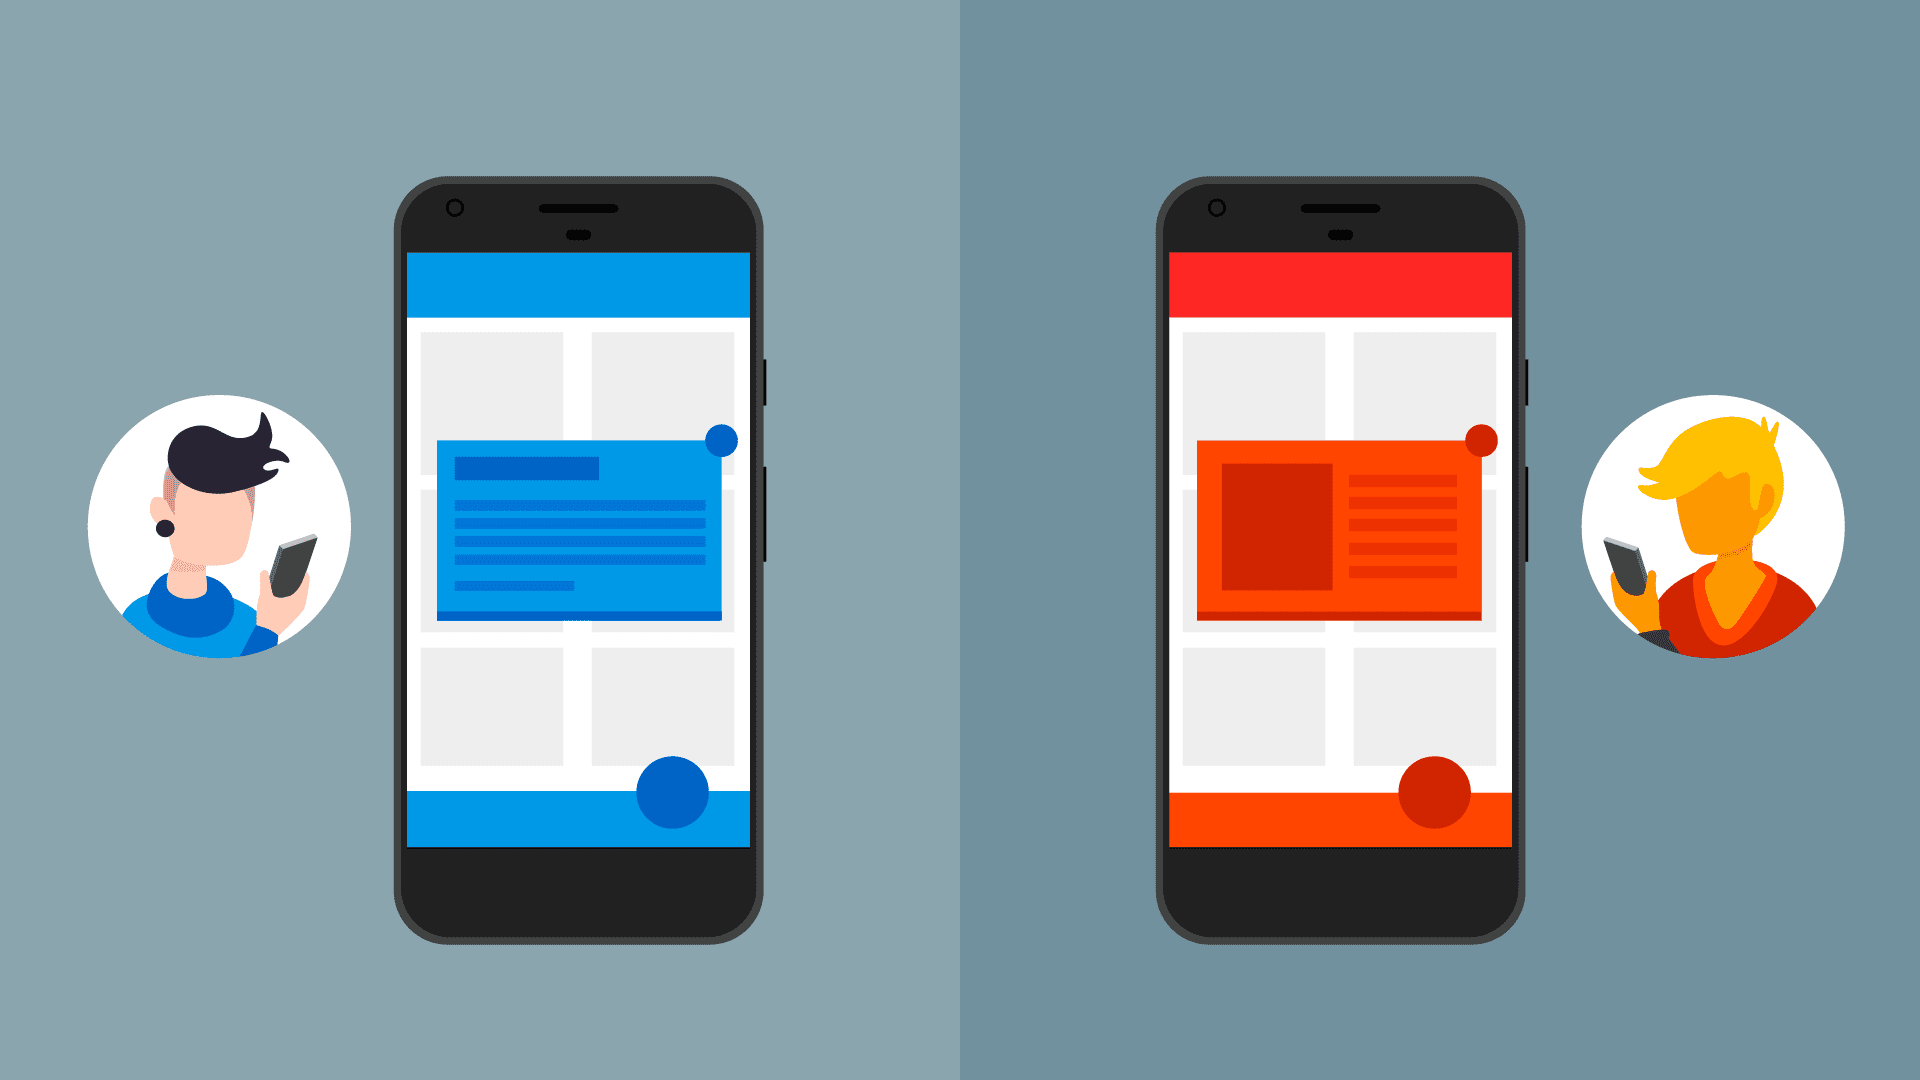 Dua pesan dalam aplikasi dengan gaya berbeda